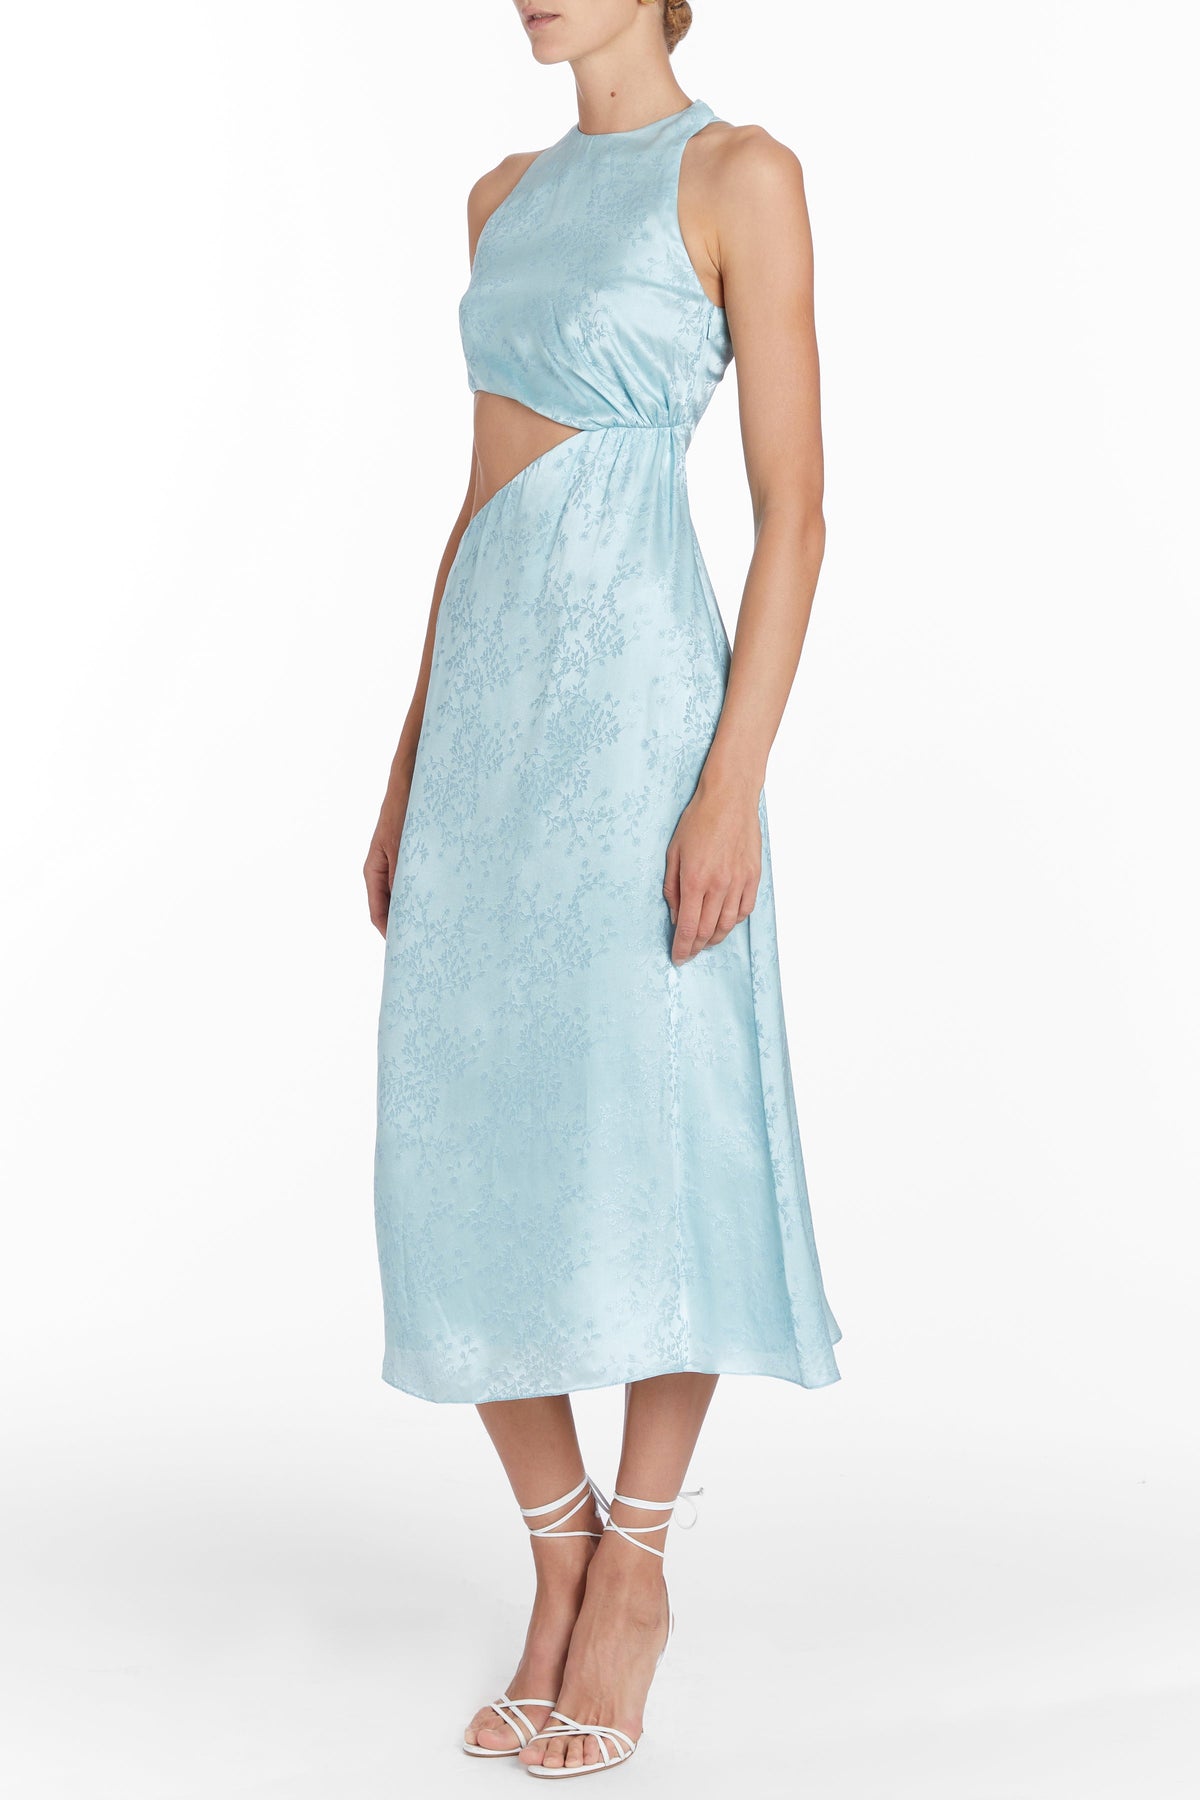 Franca Light Blue Jacquard Midi Dress